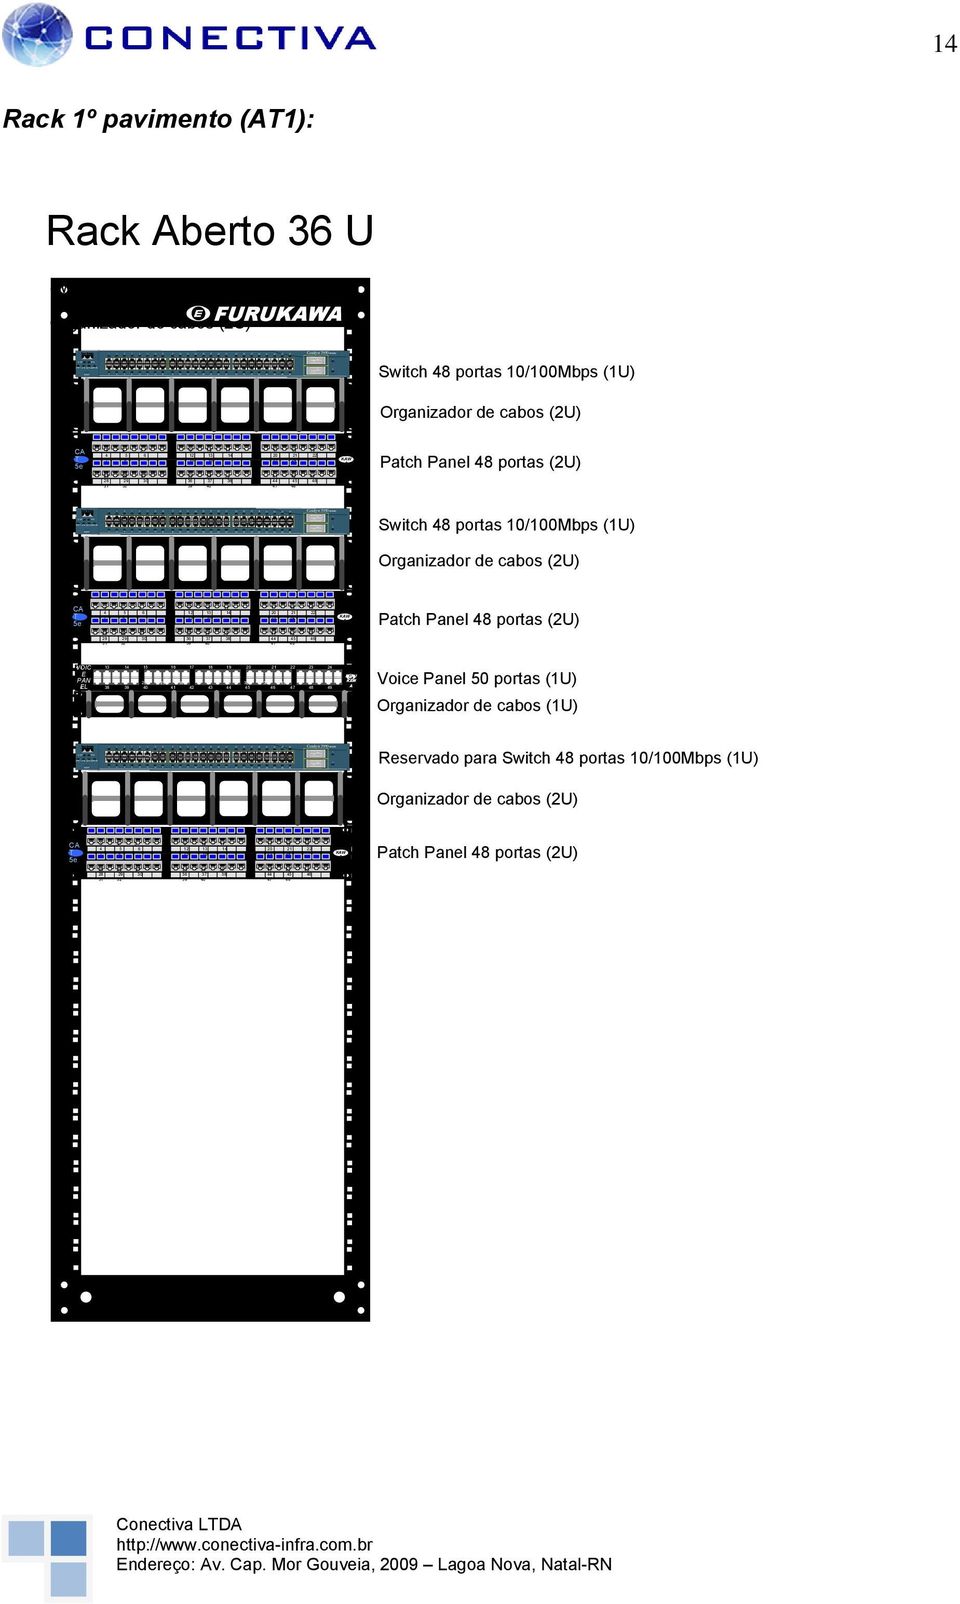 48 Catalyst 950 SERIES 4 Rack º pavimento (T): Rack berto 36 U Switch 48 portas 0/00Mbps gerenciável Organizador de cabos (U) Switch 48 portas 0/00Mbps (U) Organizador de cabos (U) C T 5e 3 4 5 6 7 8